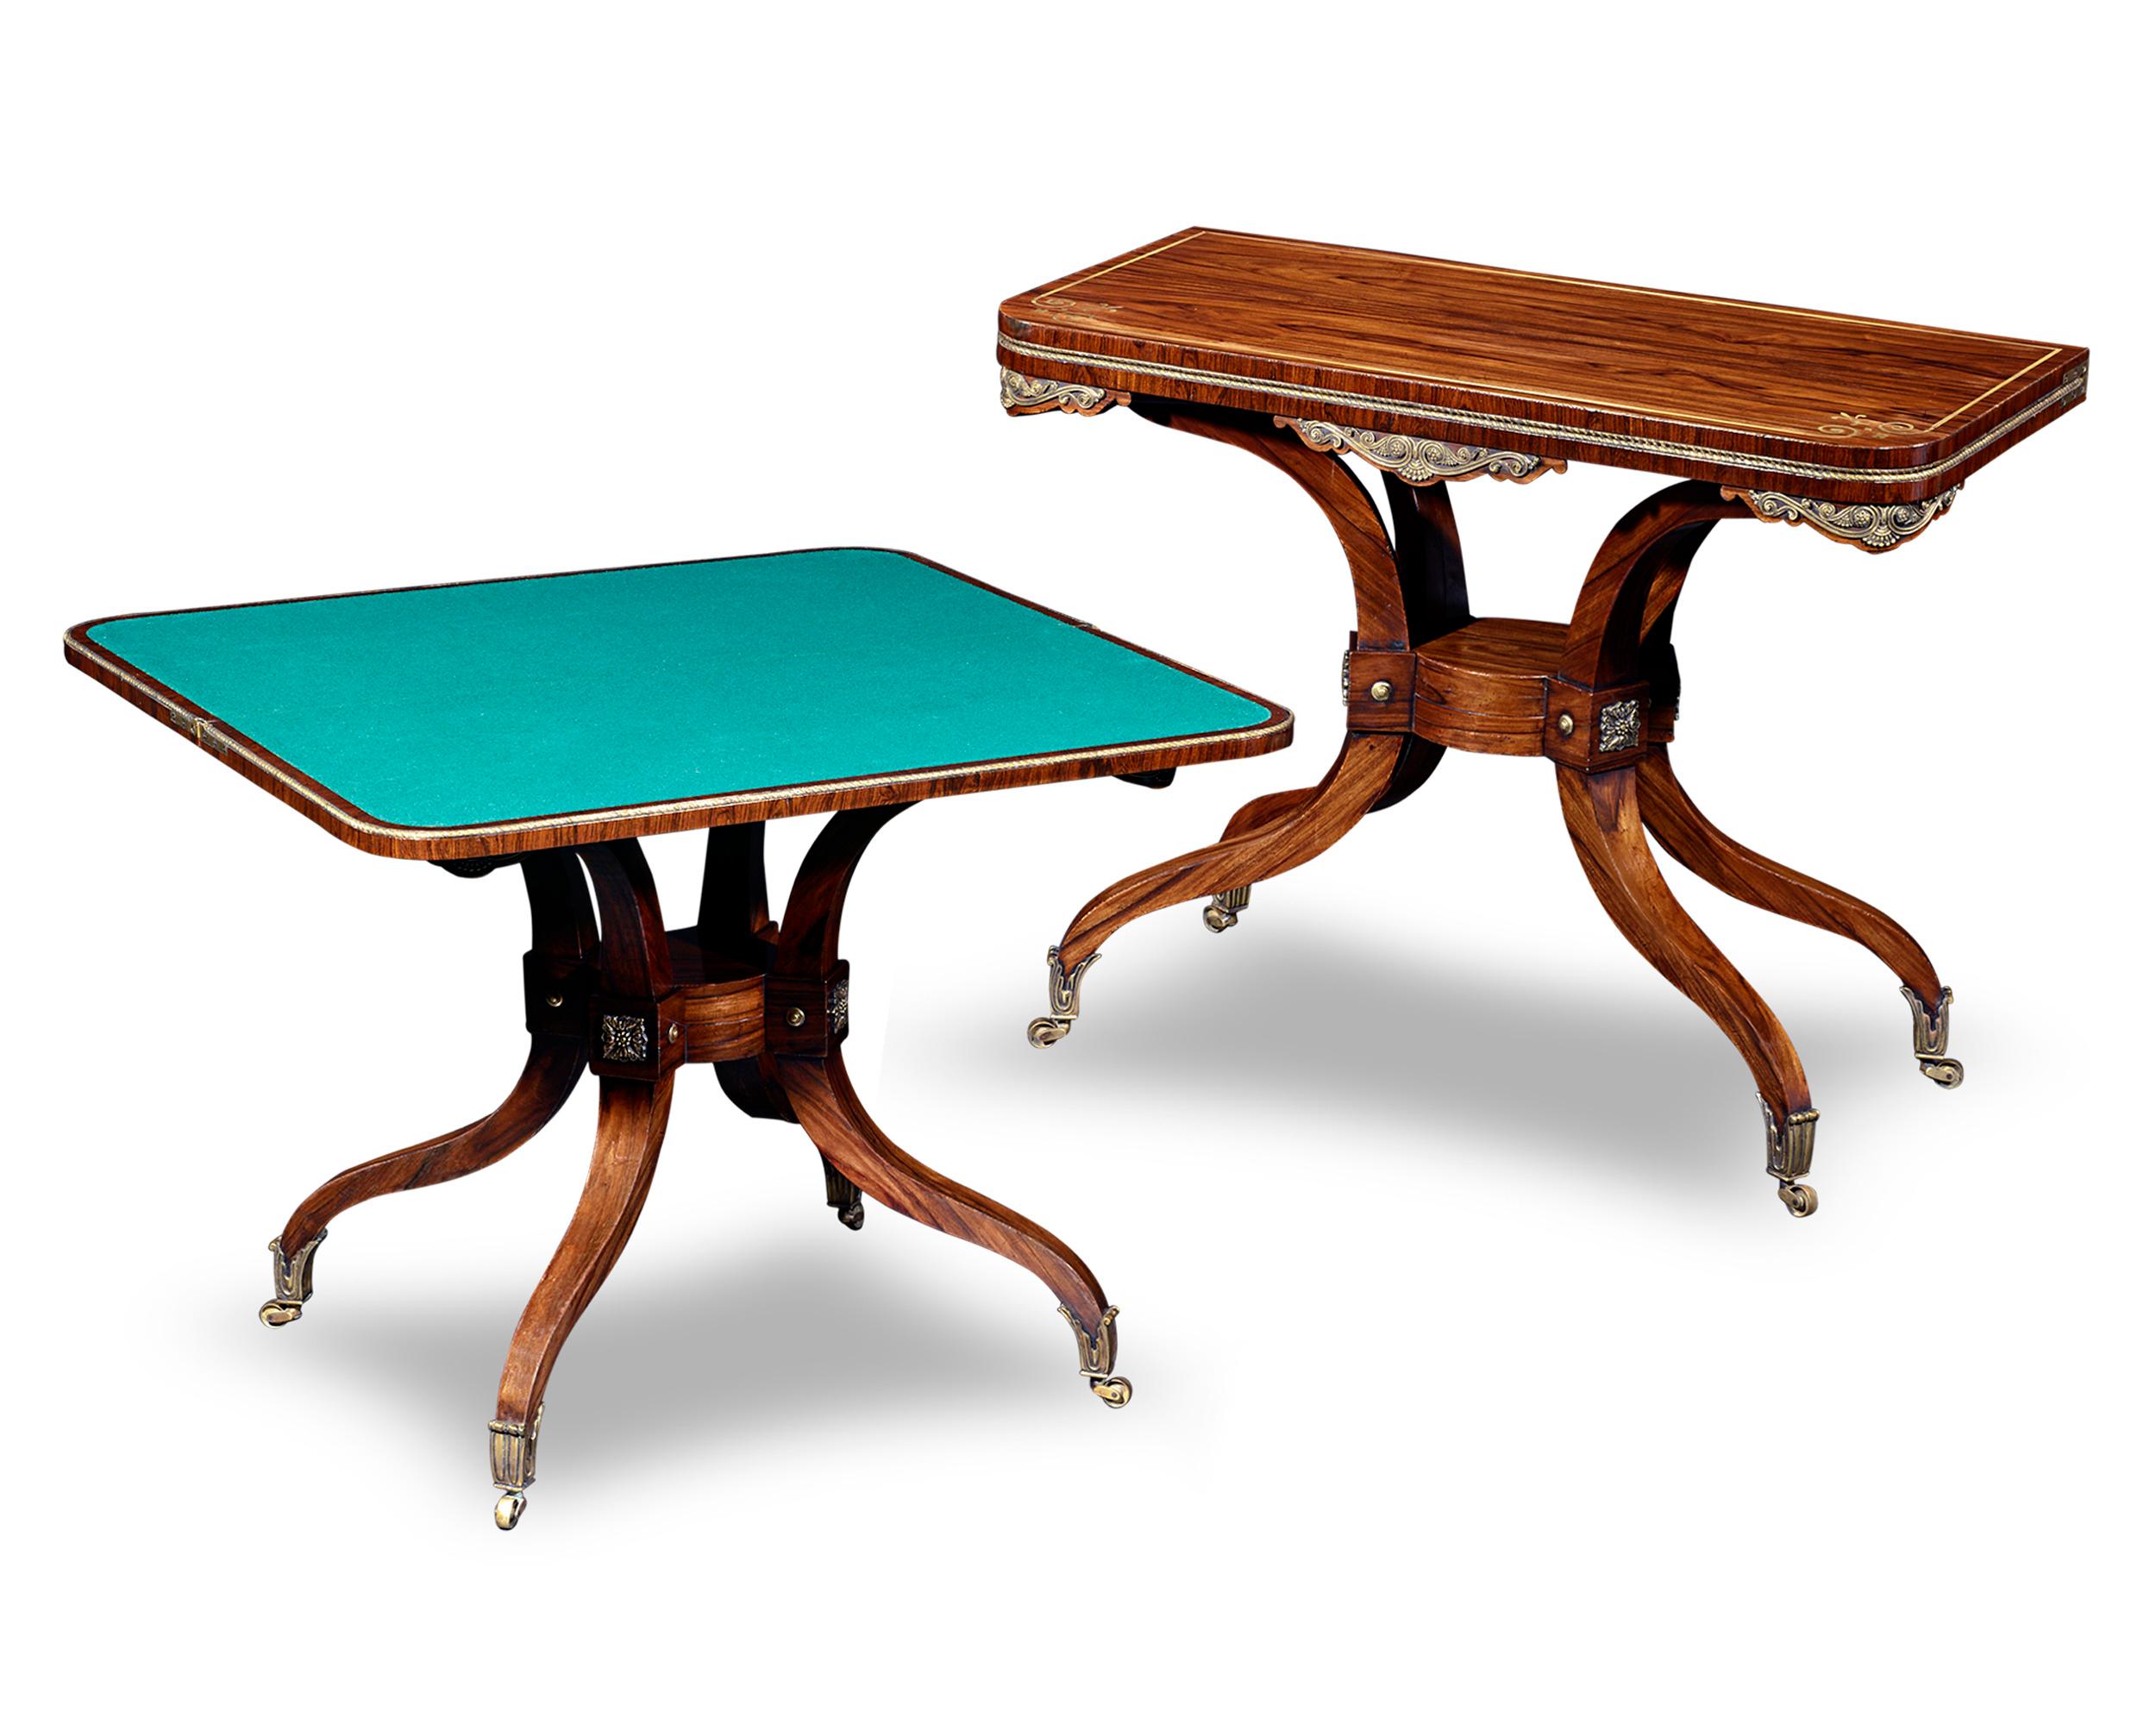 Ces exceptionnelles tables à cartes Regency ont été conçues dans un double but. Fabriquées en bois de rose, ces tables servent de jolies consoles lorsqu'elles sont fermées. Une fois ouvertes, les tables se transforment rapidement en une surface de